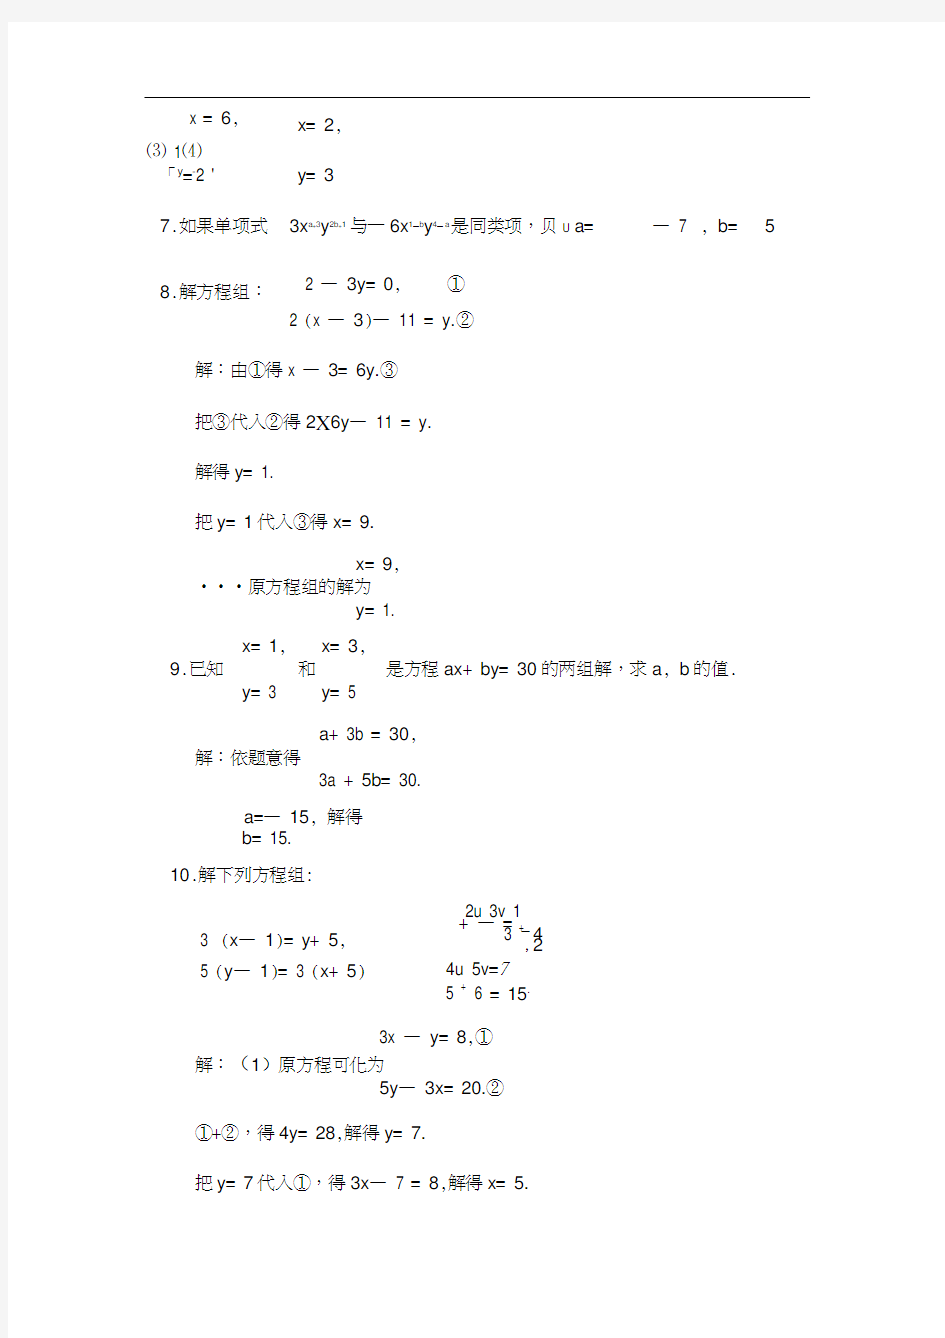 (完整版)七年级下数学第2章二元一次方程组经典易错题可直接打印2013新浙教版带答案可直接打印